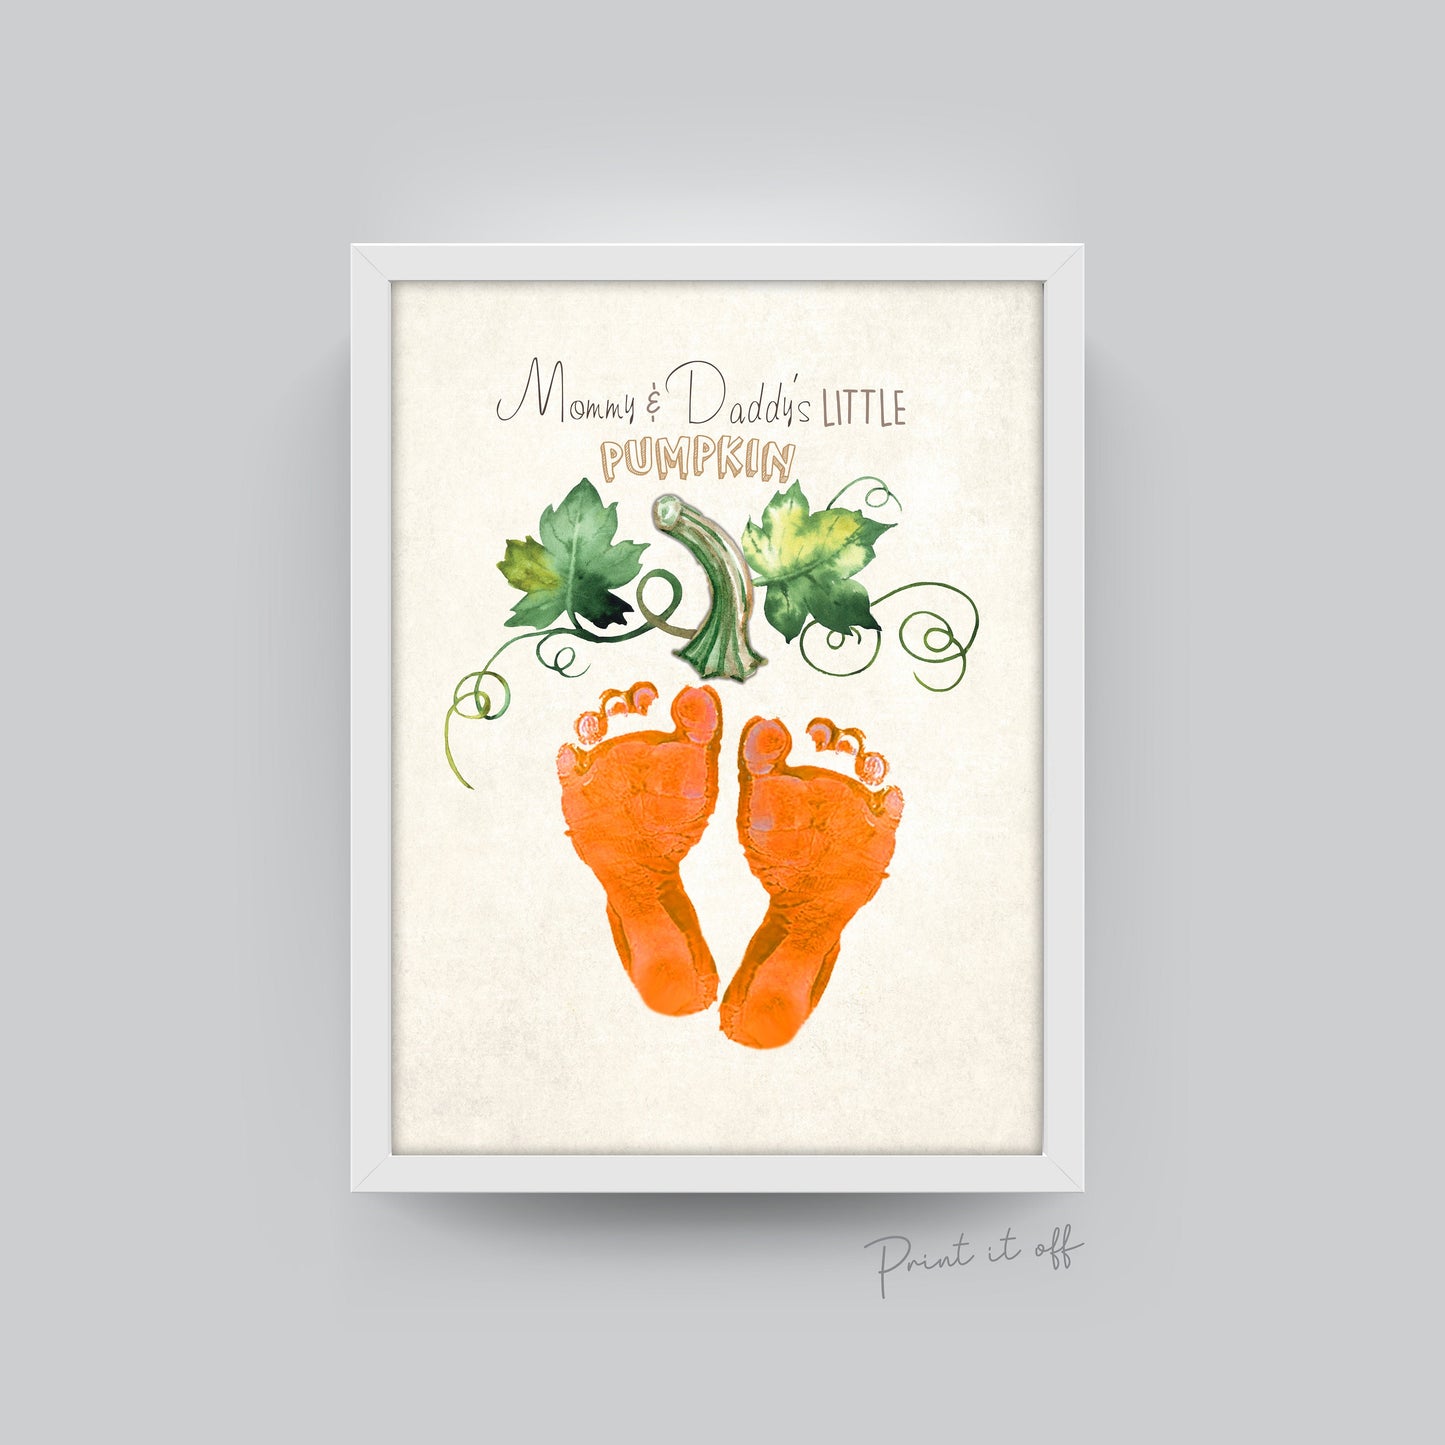 Mommy and Daddy's Little Pumpkin / Footprint Feet Handprint / Halloween Art Craft / Kids Baby Toddler / Keepsake Memory Decor DIY Print 0318